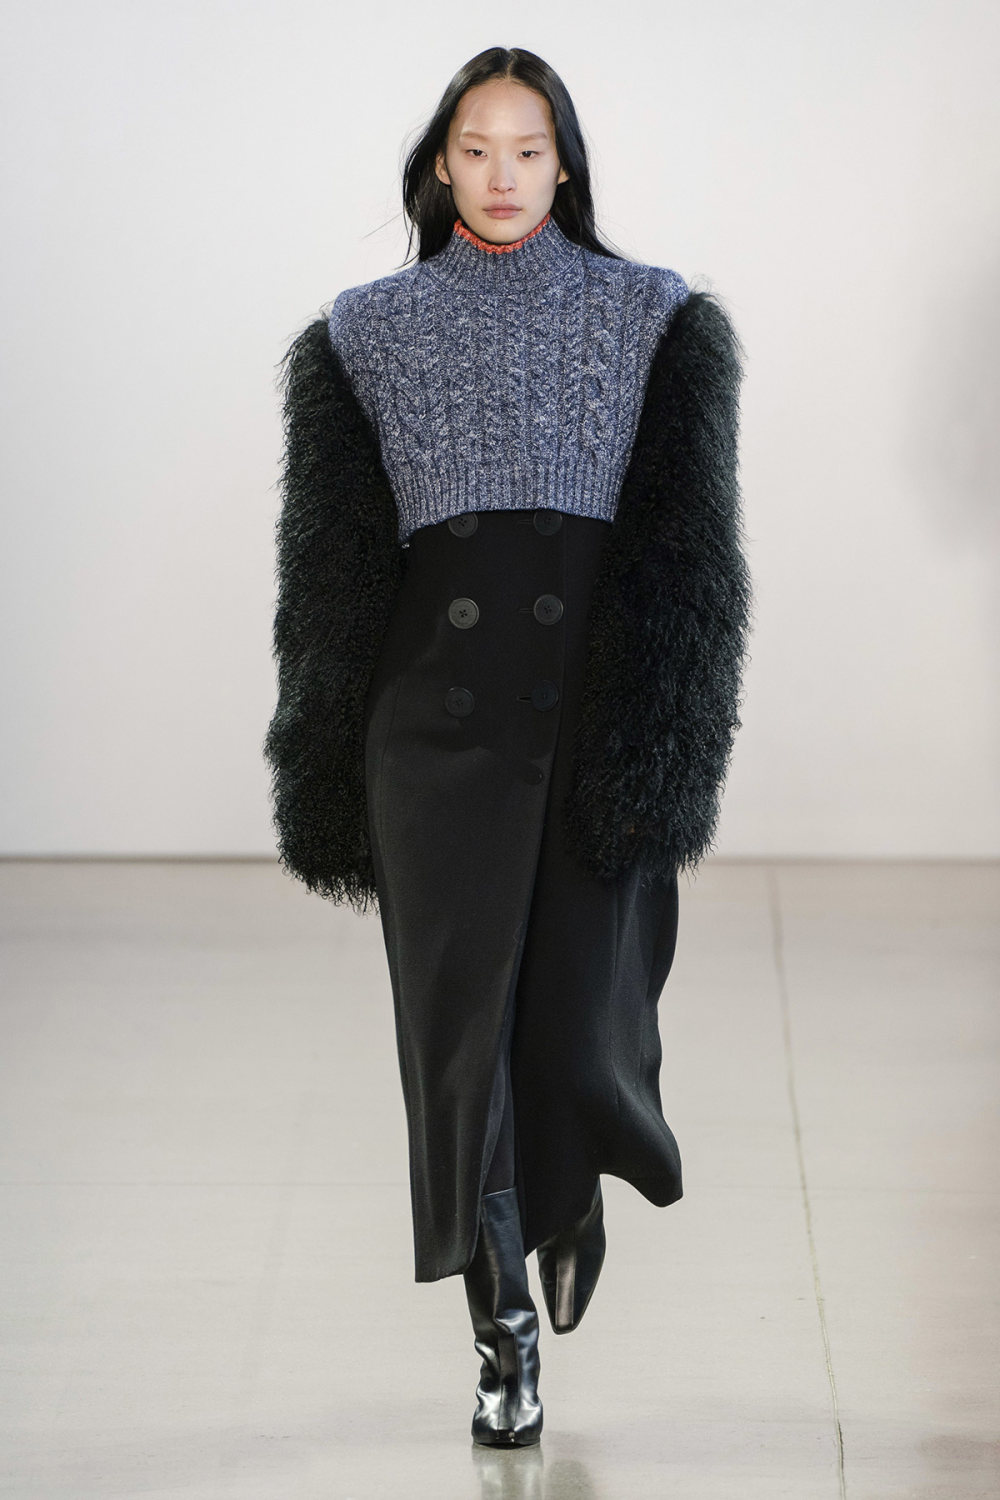 Claudia Li时装系列另一种設計用于针织毛衣的胖乎乎的蓬松袖子-28.jpg